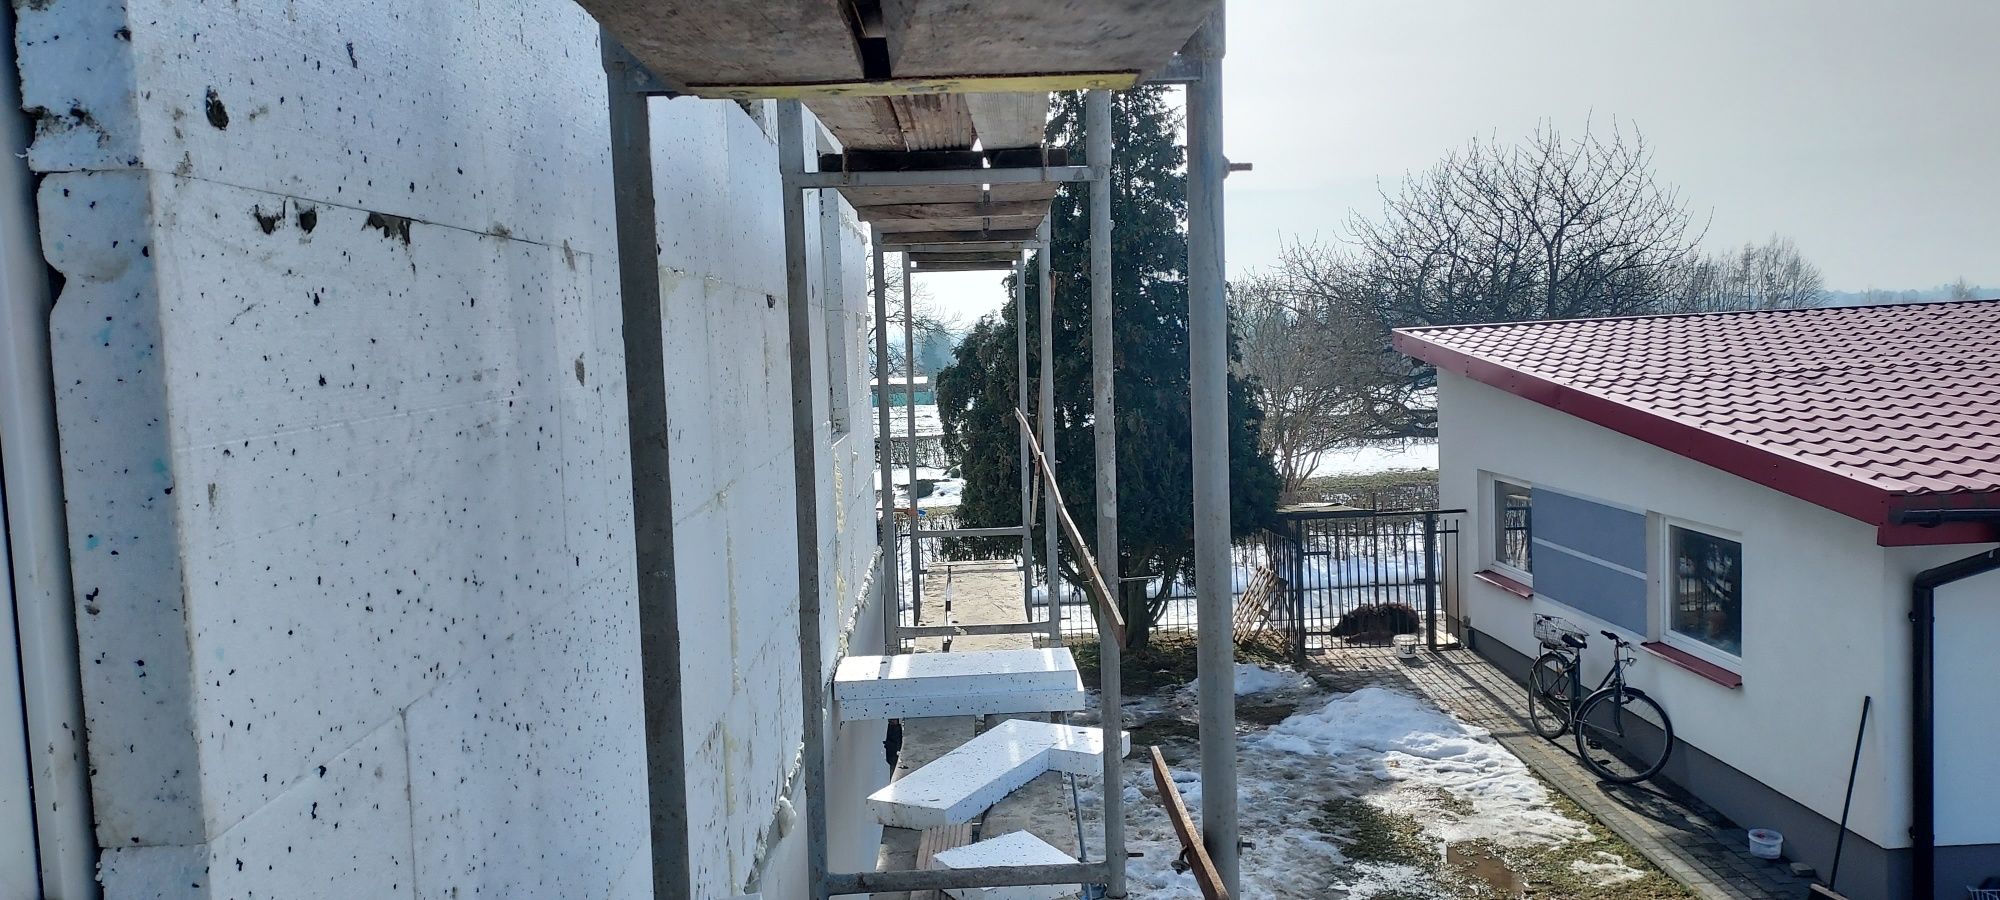 Remonty i budowa domów przebudowy rozbiórki  gładźe płyty gk malowanie